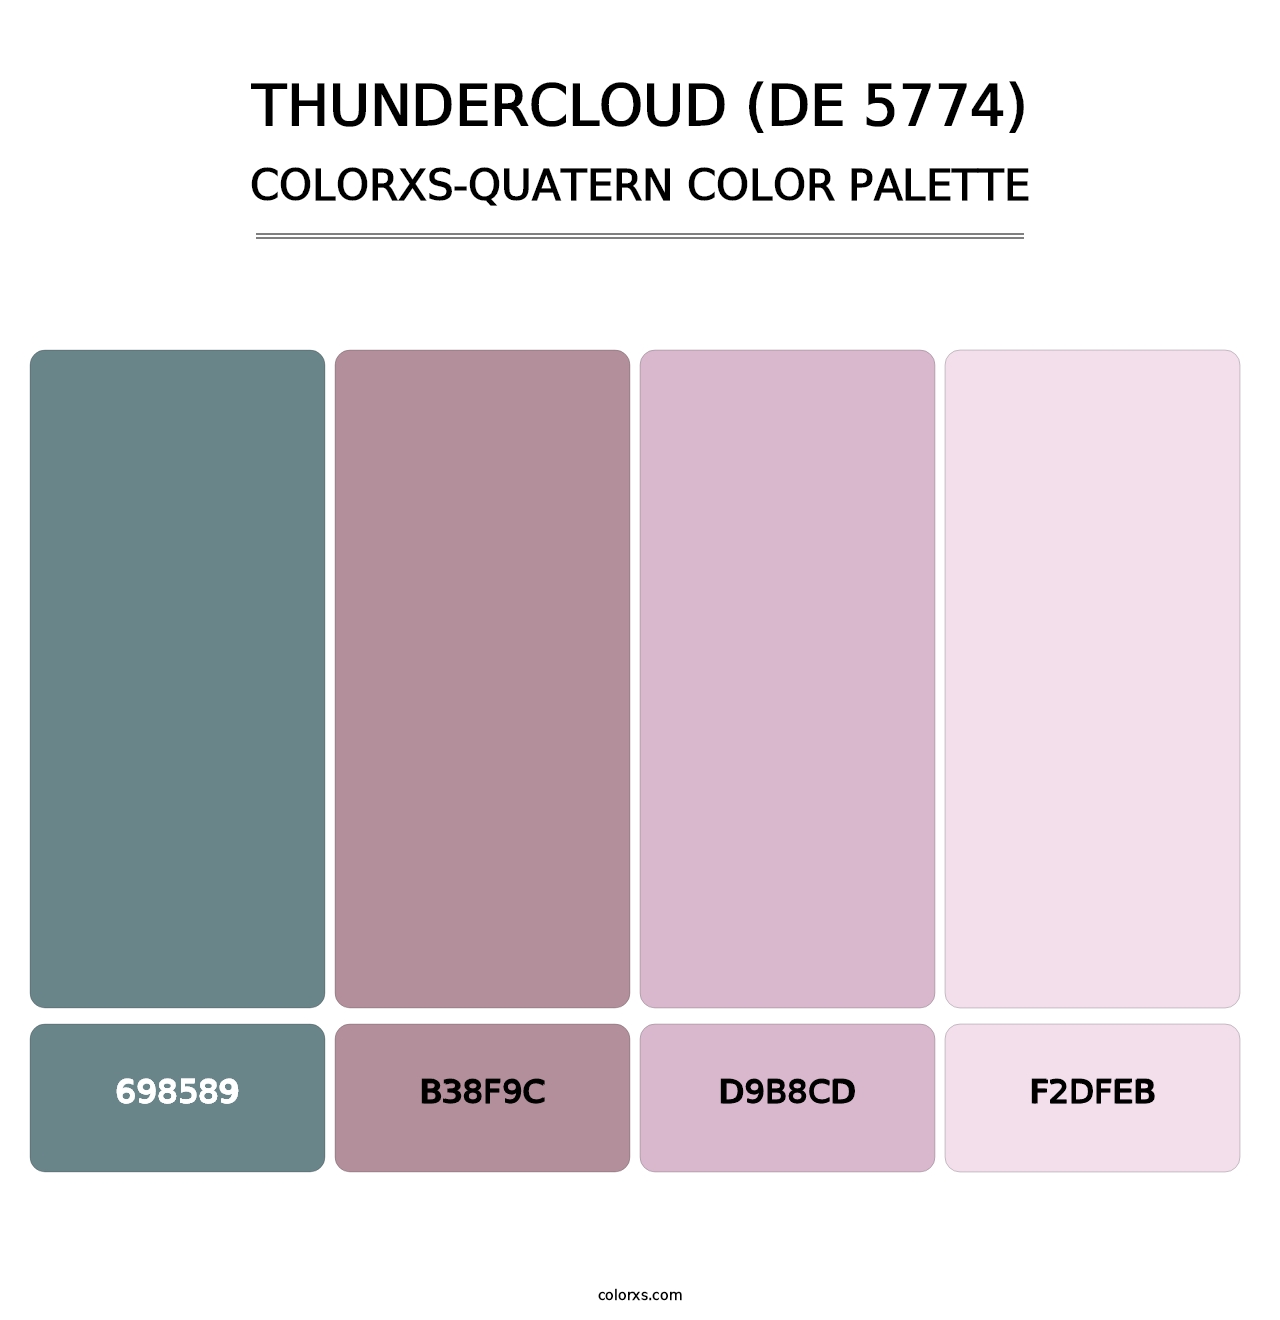 Thundercloud (DE 5774) - Colorxs Quatern Palette